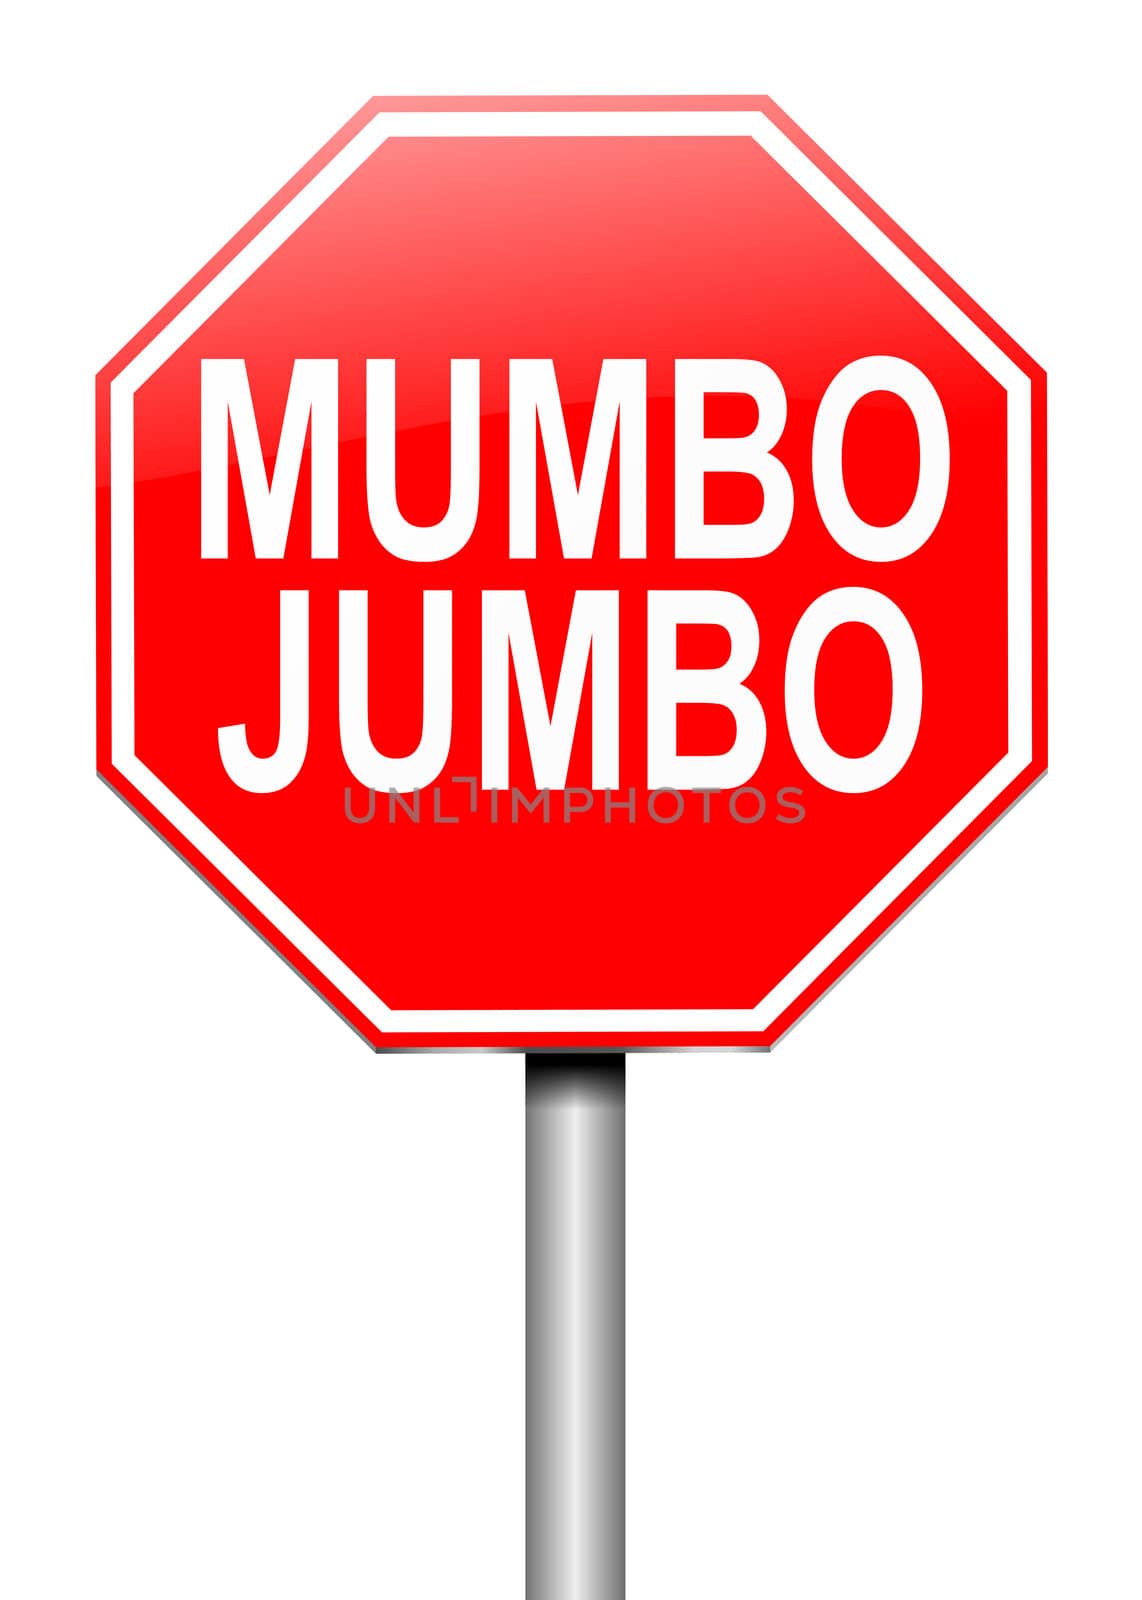 Mumbo jumbo concept. by 72soul